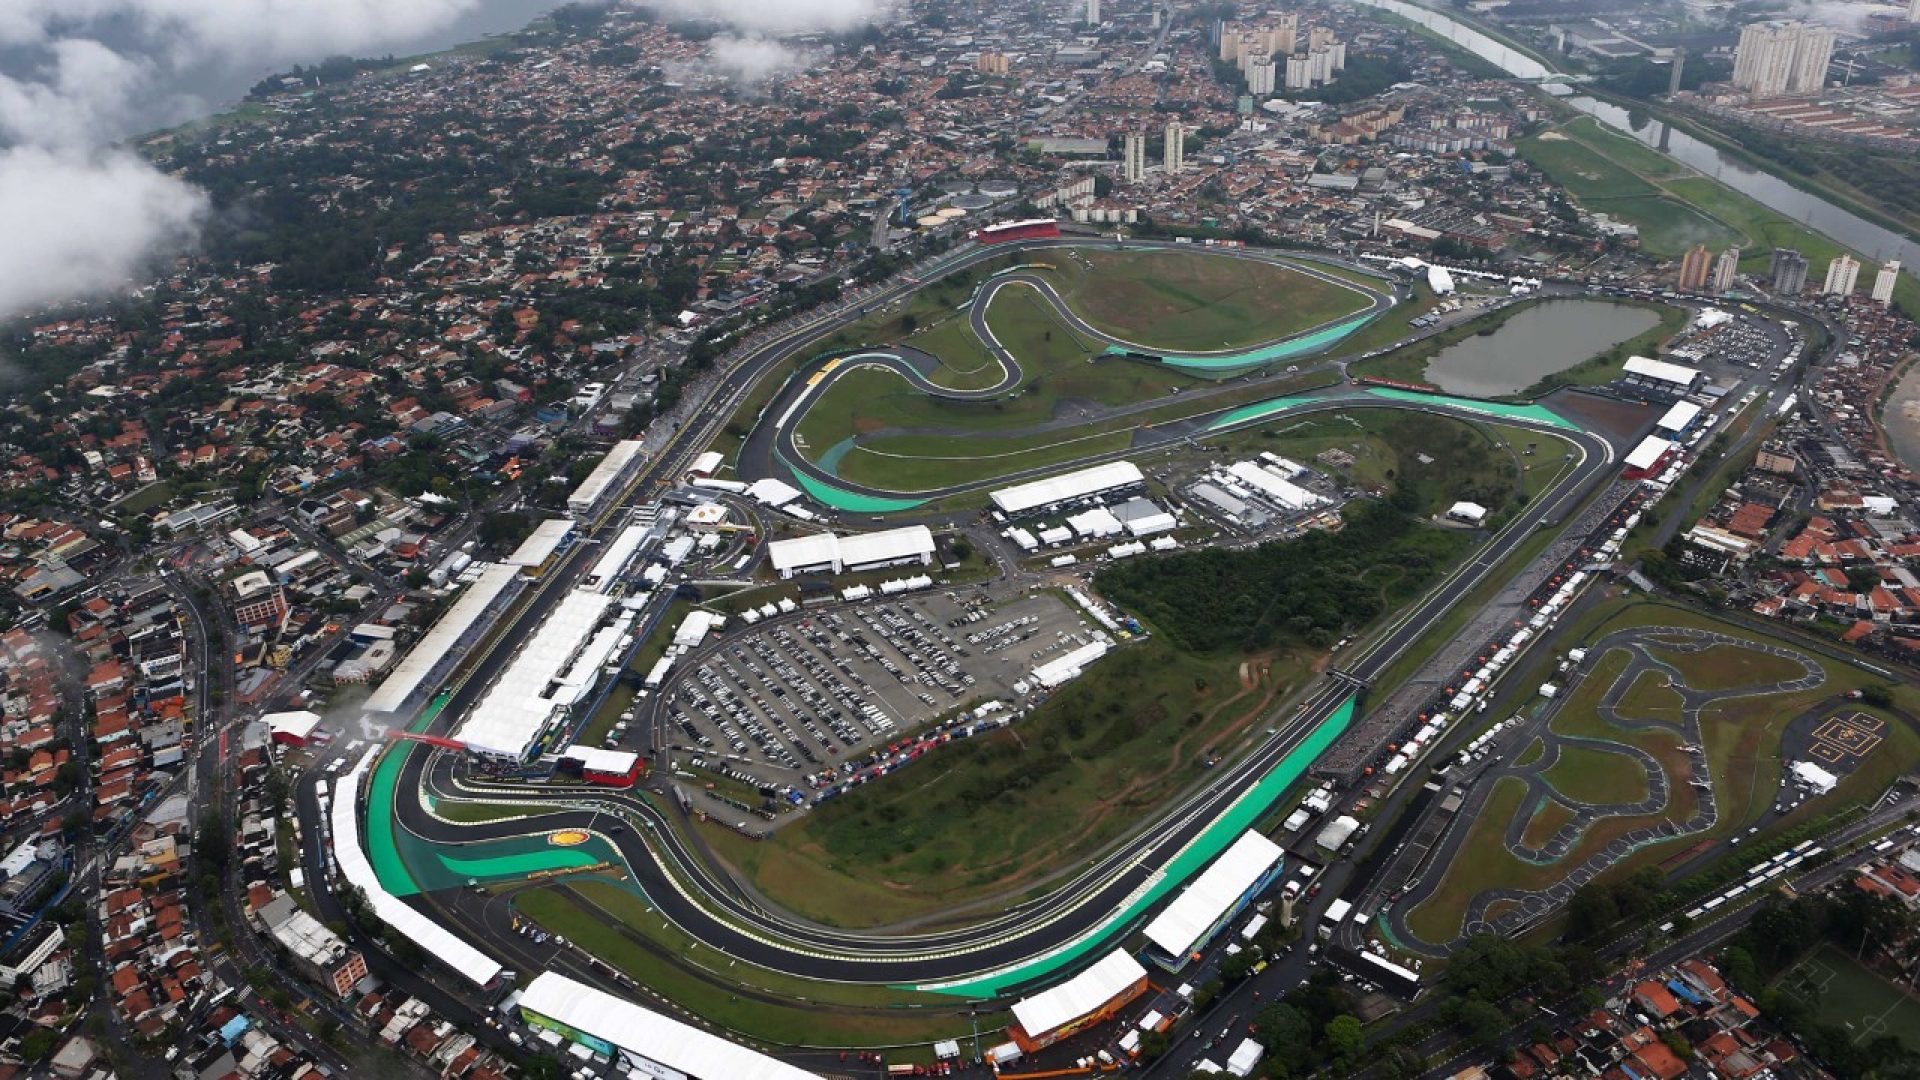 Jadwal F1 Brasil 2017, Siaran Langsung Formula 1 Seri 19 GP Sao Paulo Akhir Pekan Ini (10 121117)